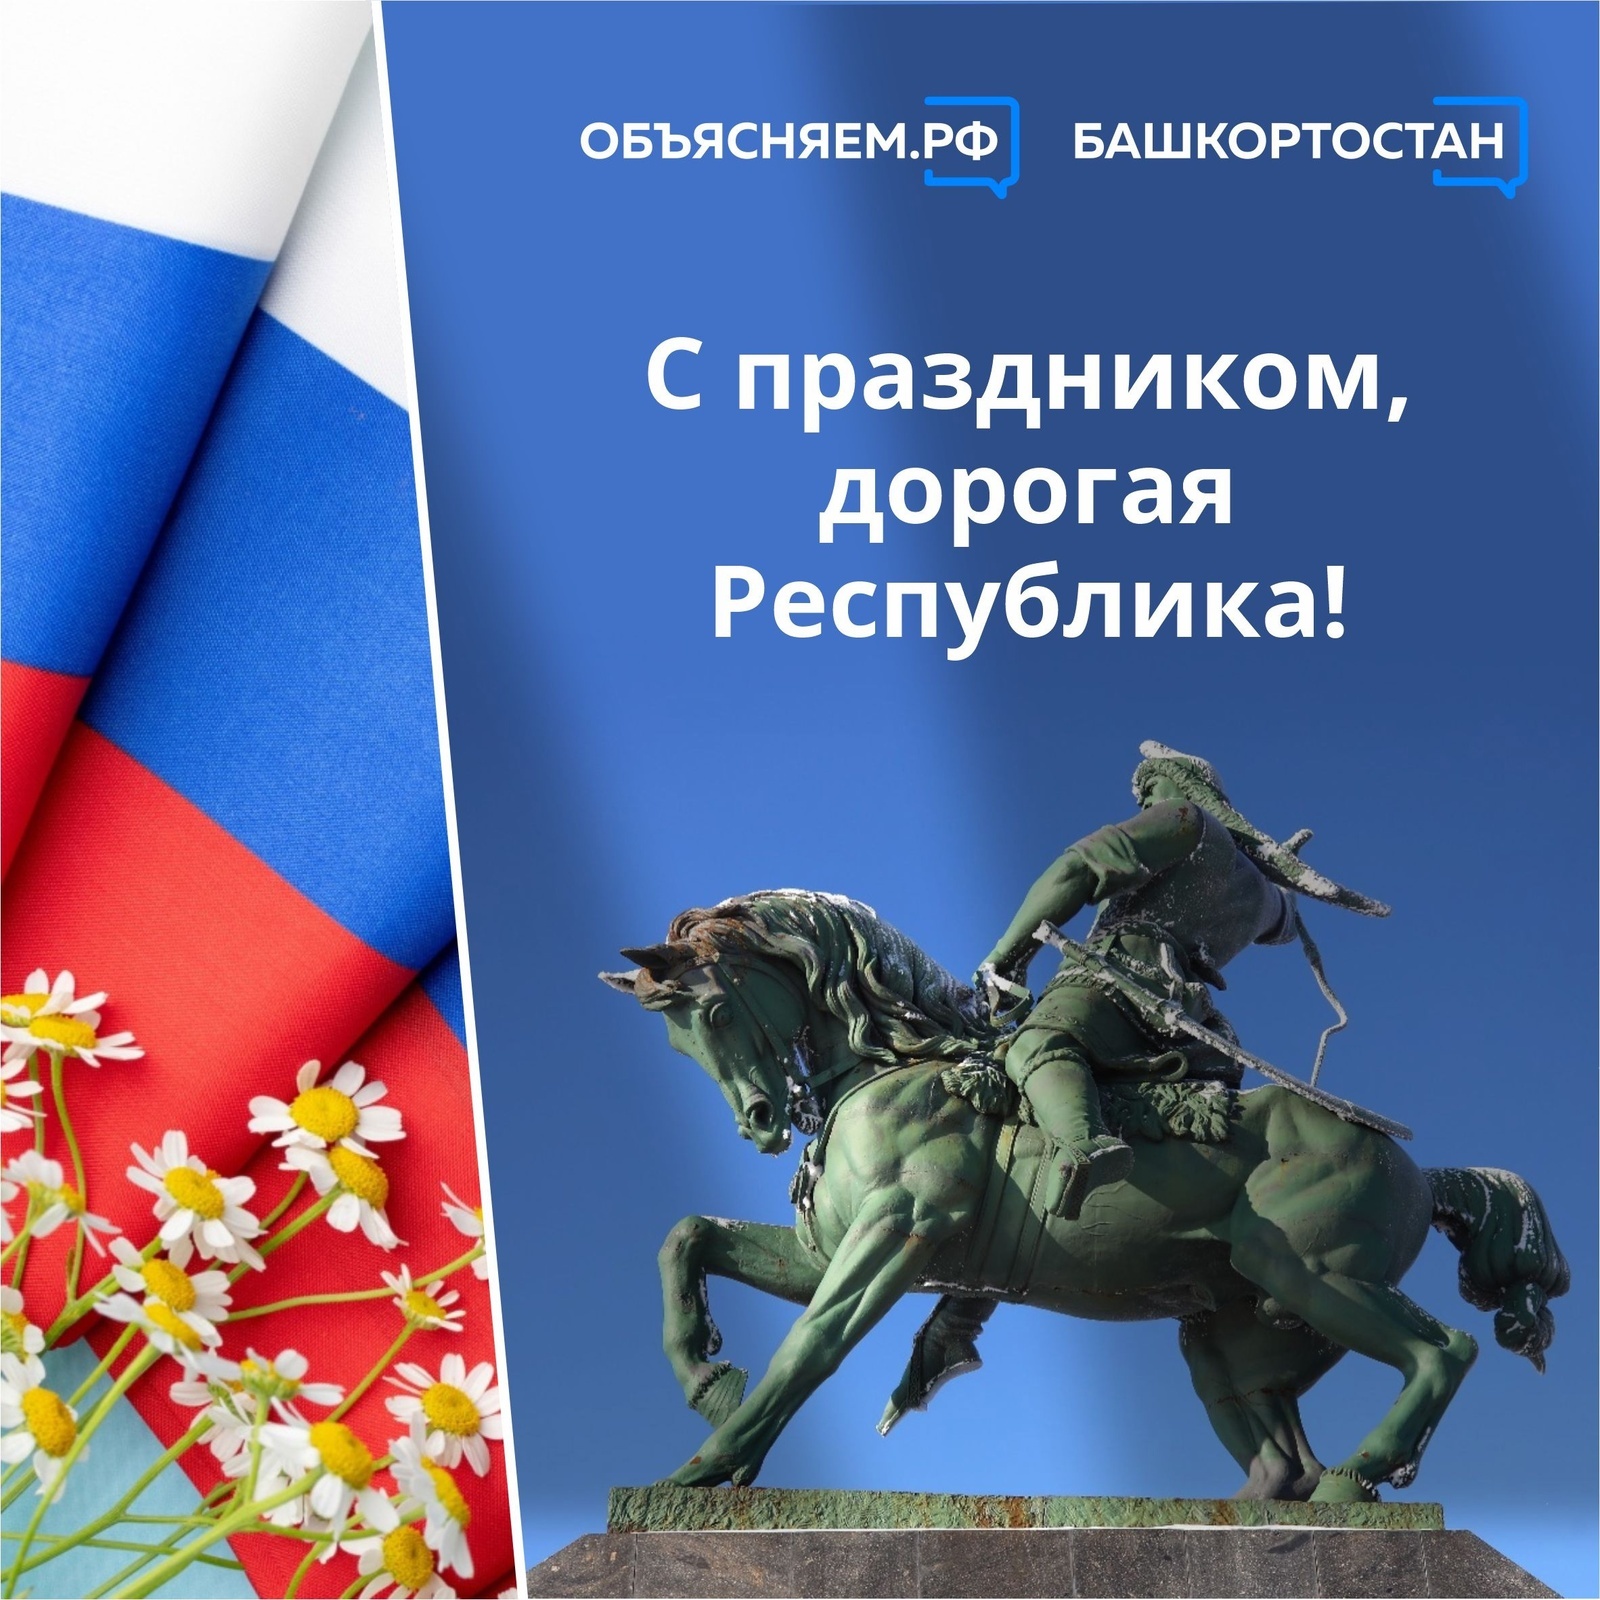 Сегодня, 12 июня, вся страна отмечает День России, уфимцы – 449-летие основания города Уфы